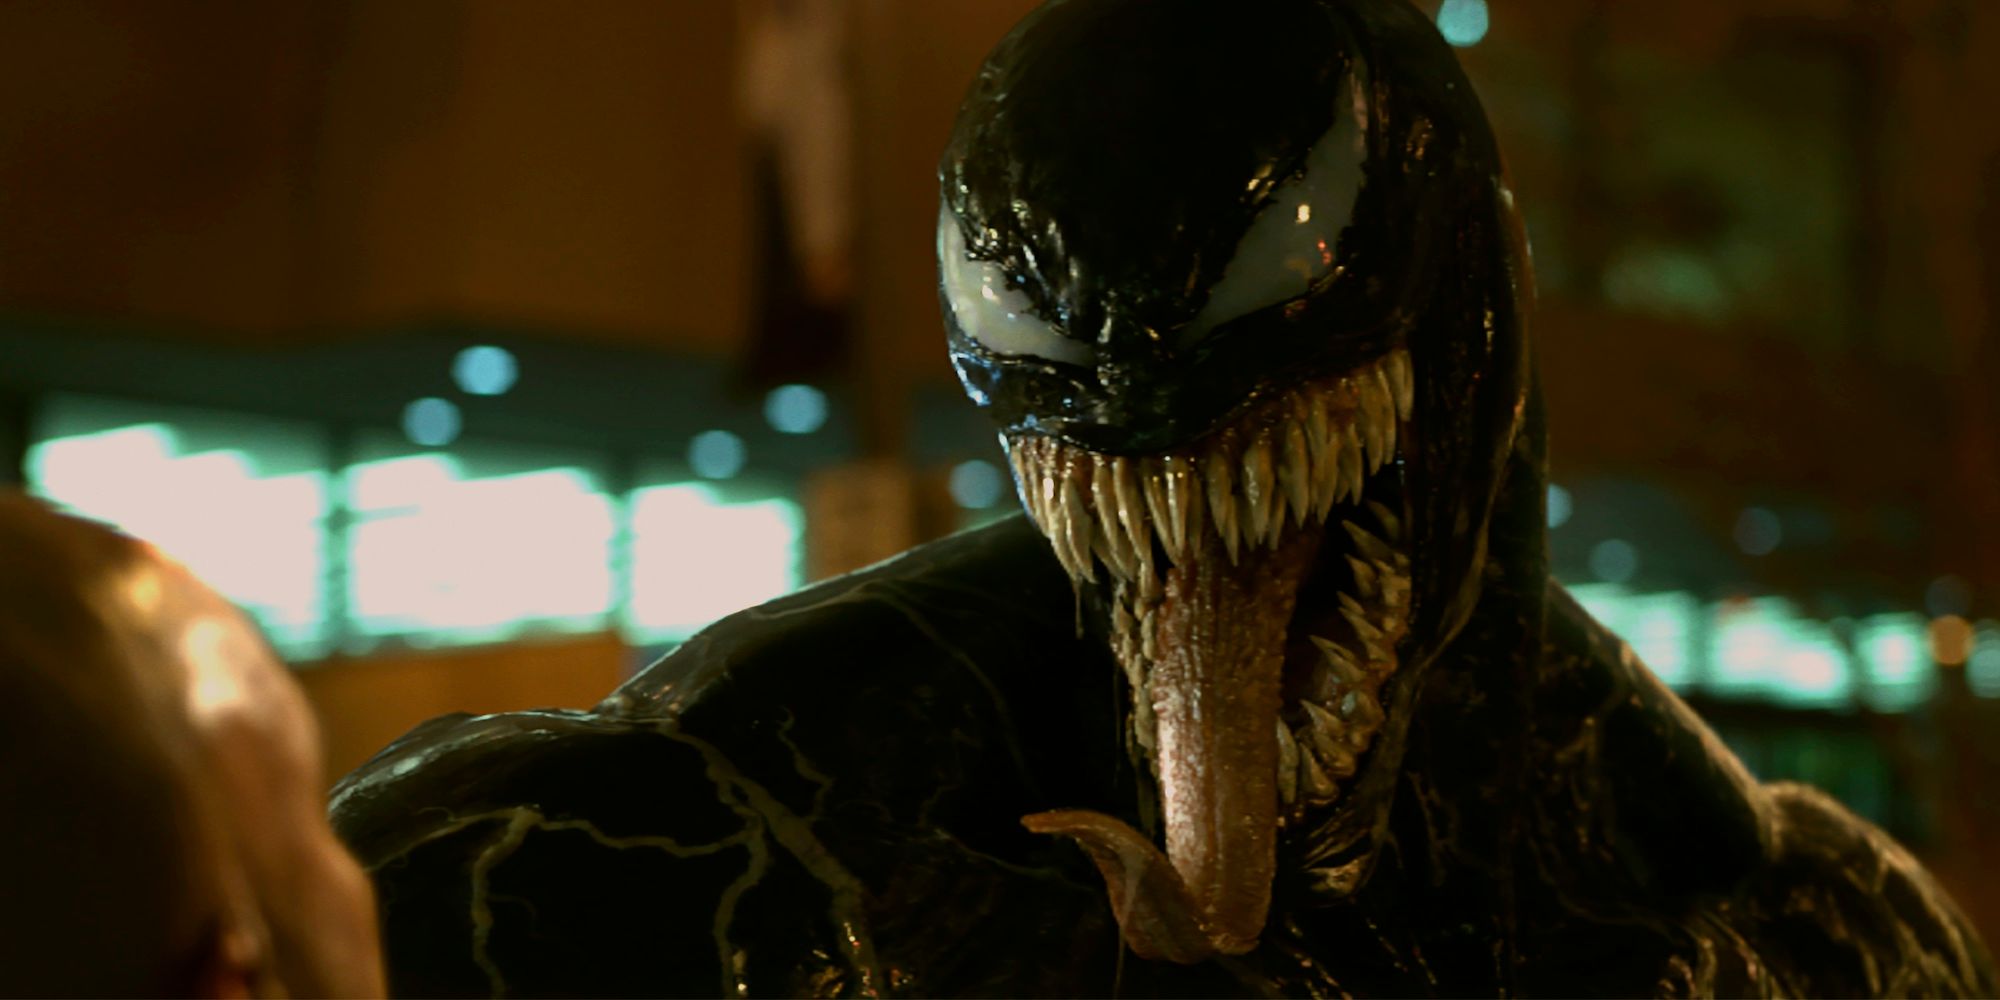 Venom Movie Review